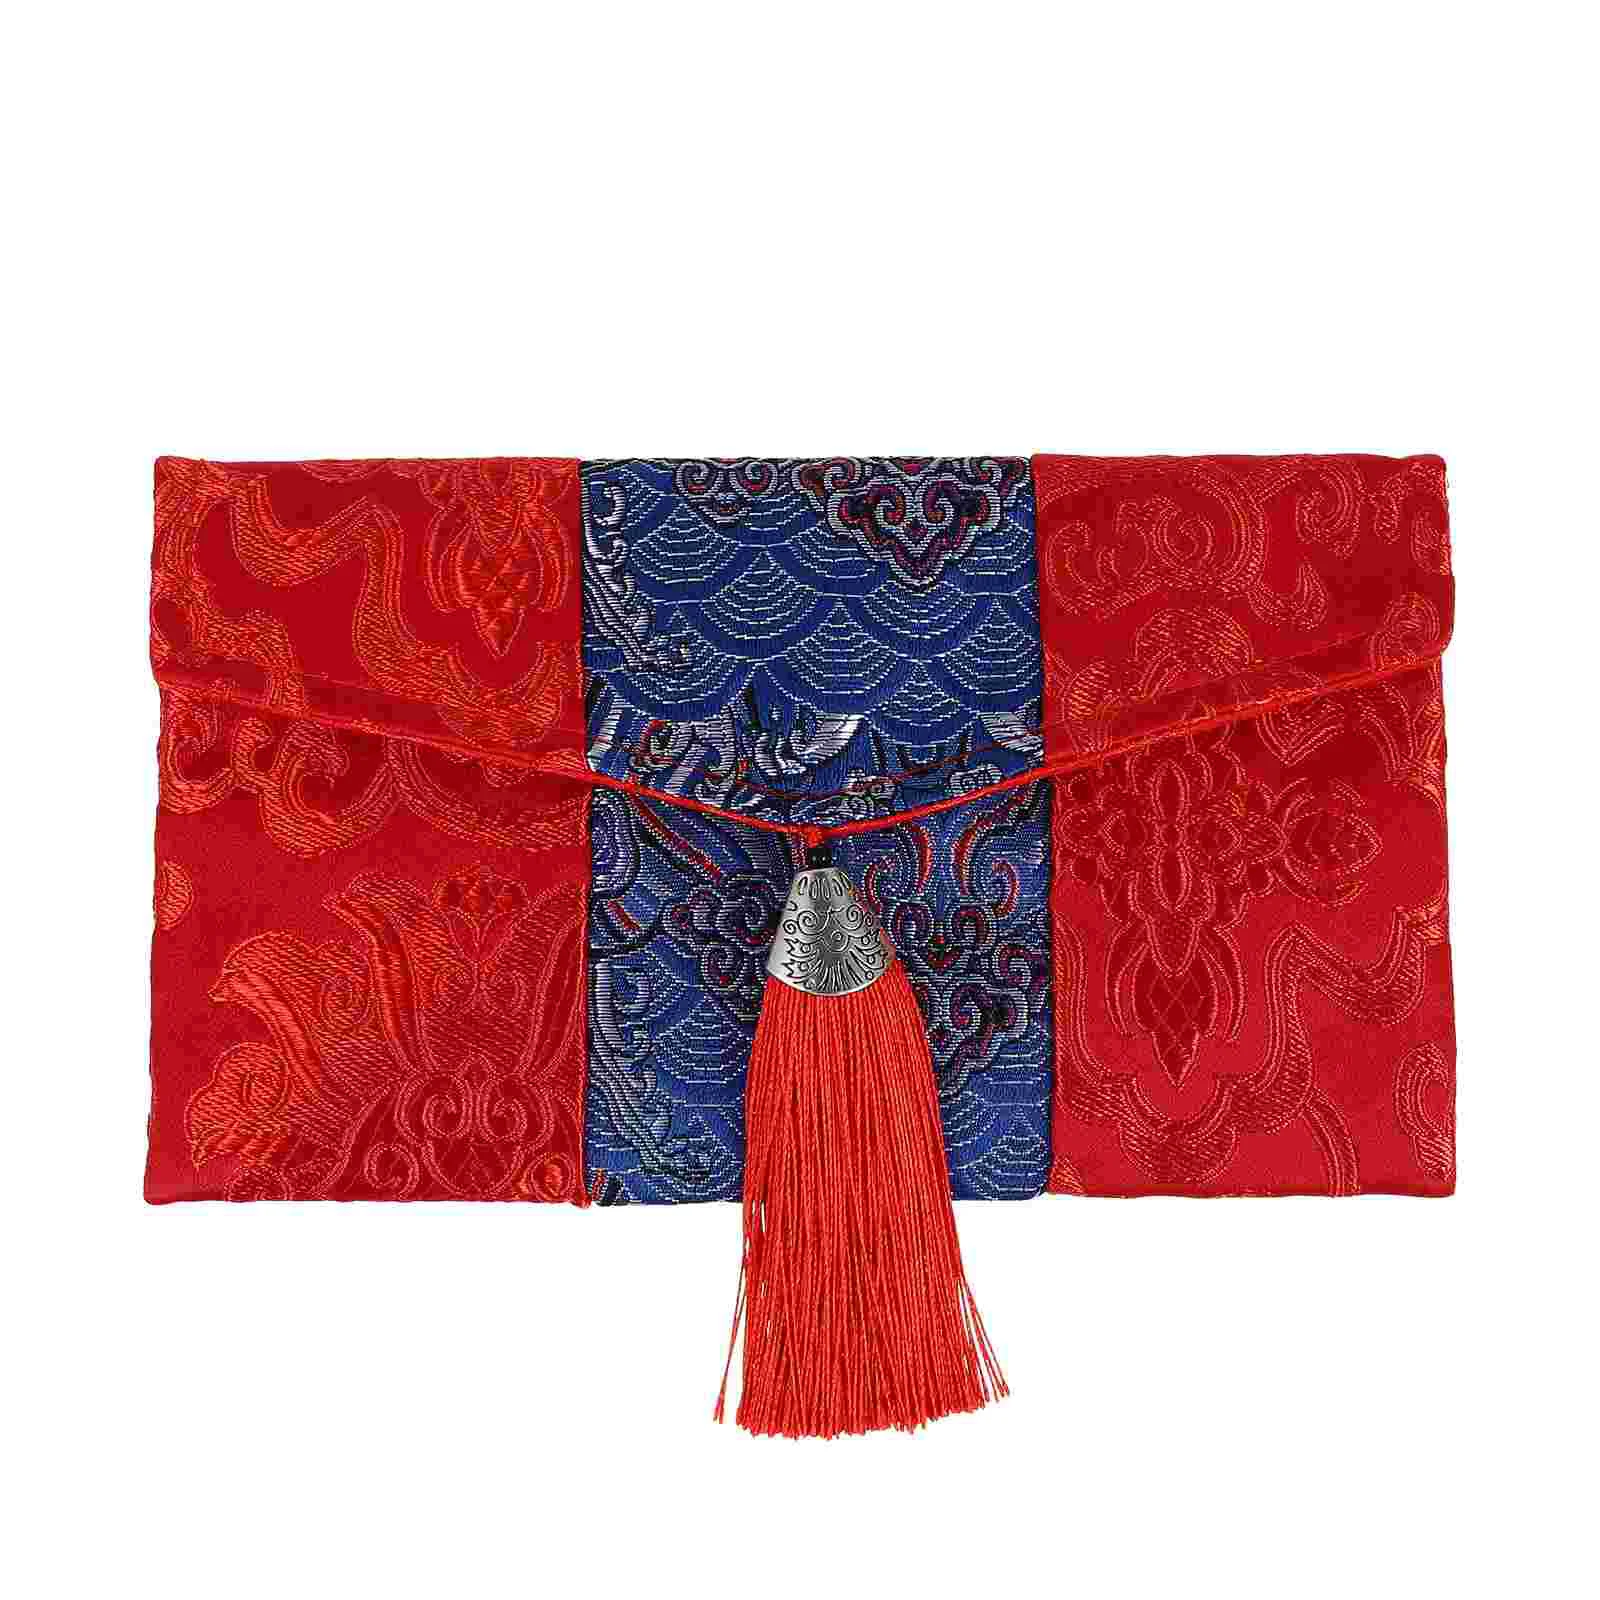 

Сумки Hongbao, тканевый красный конверт, женские кошельки, карманы для денег в китайском стиле